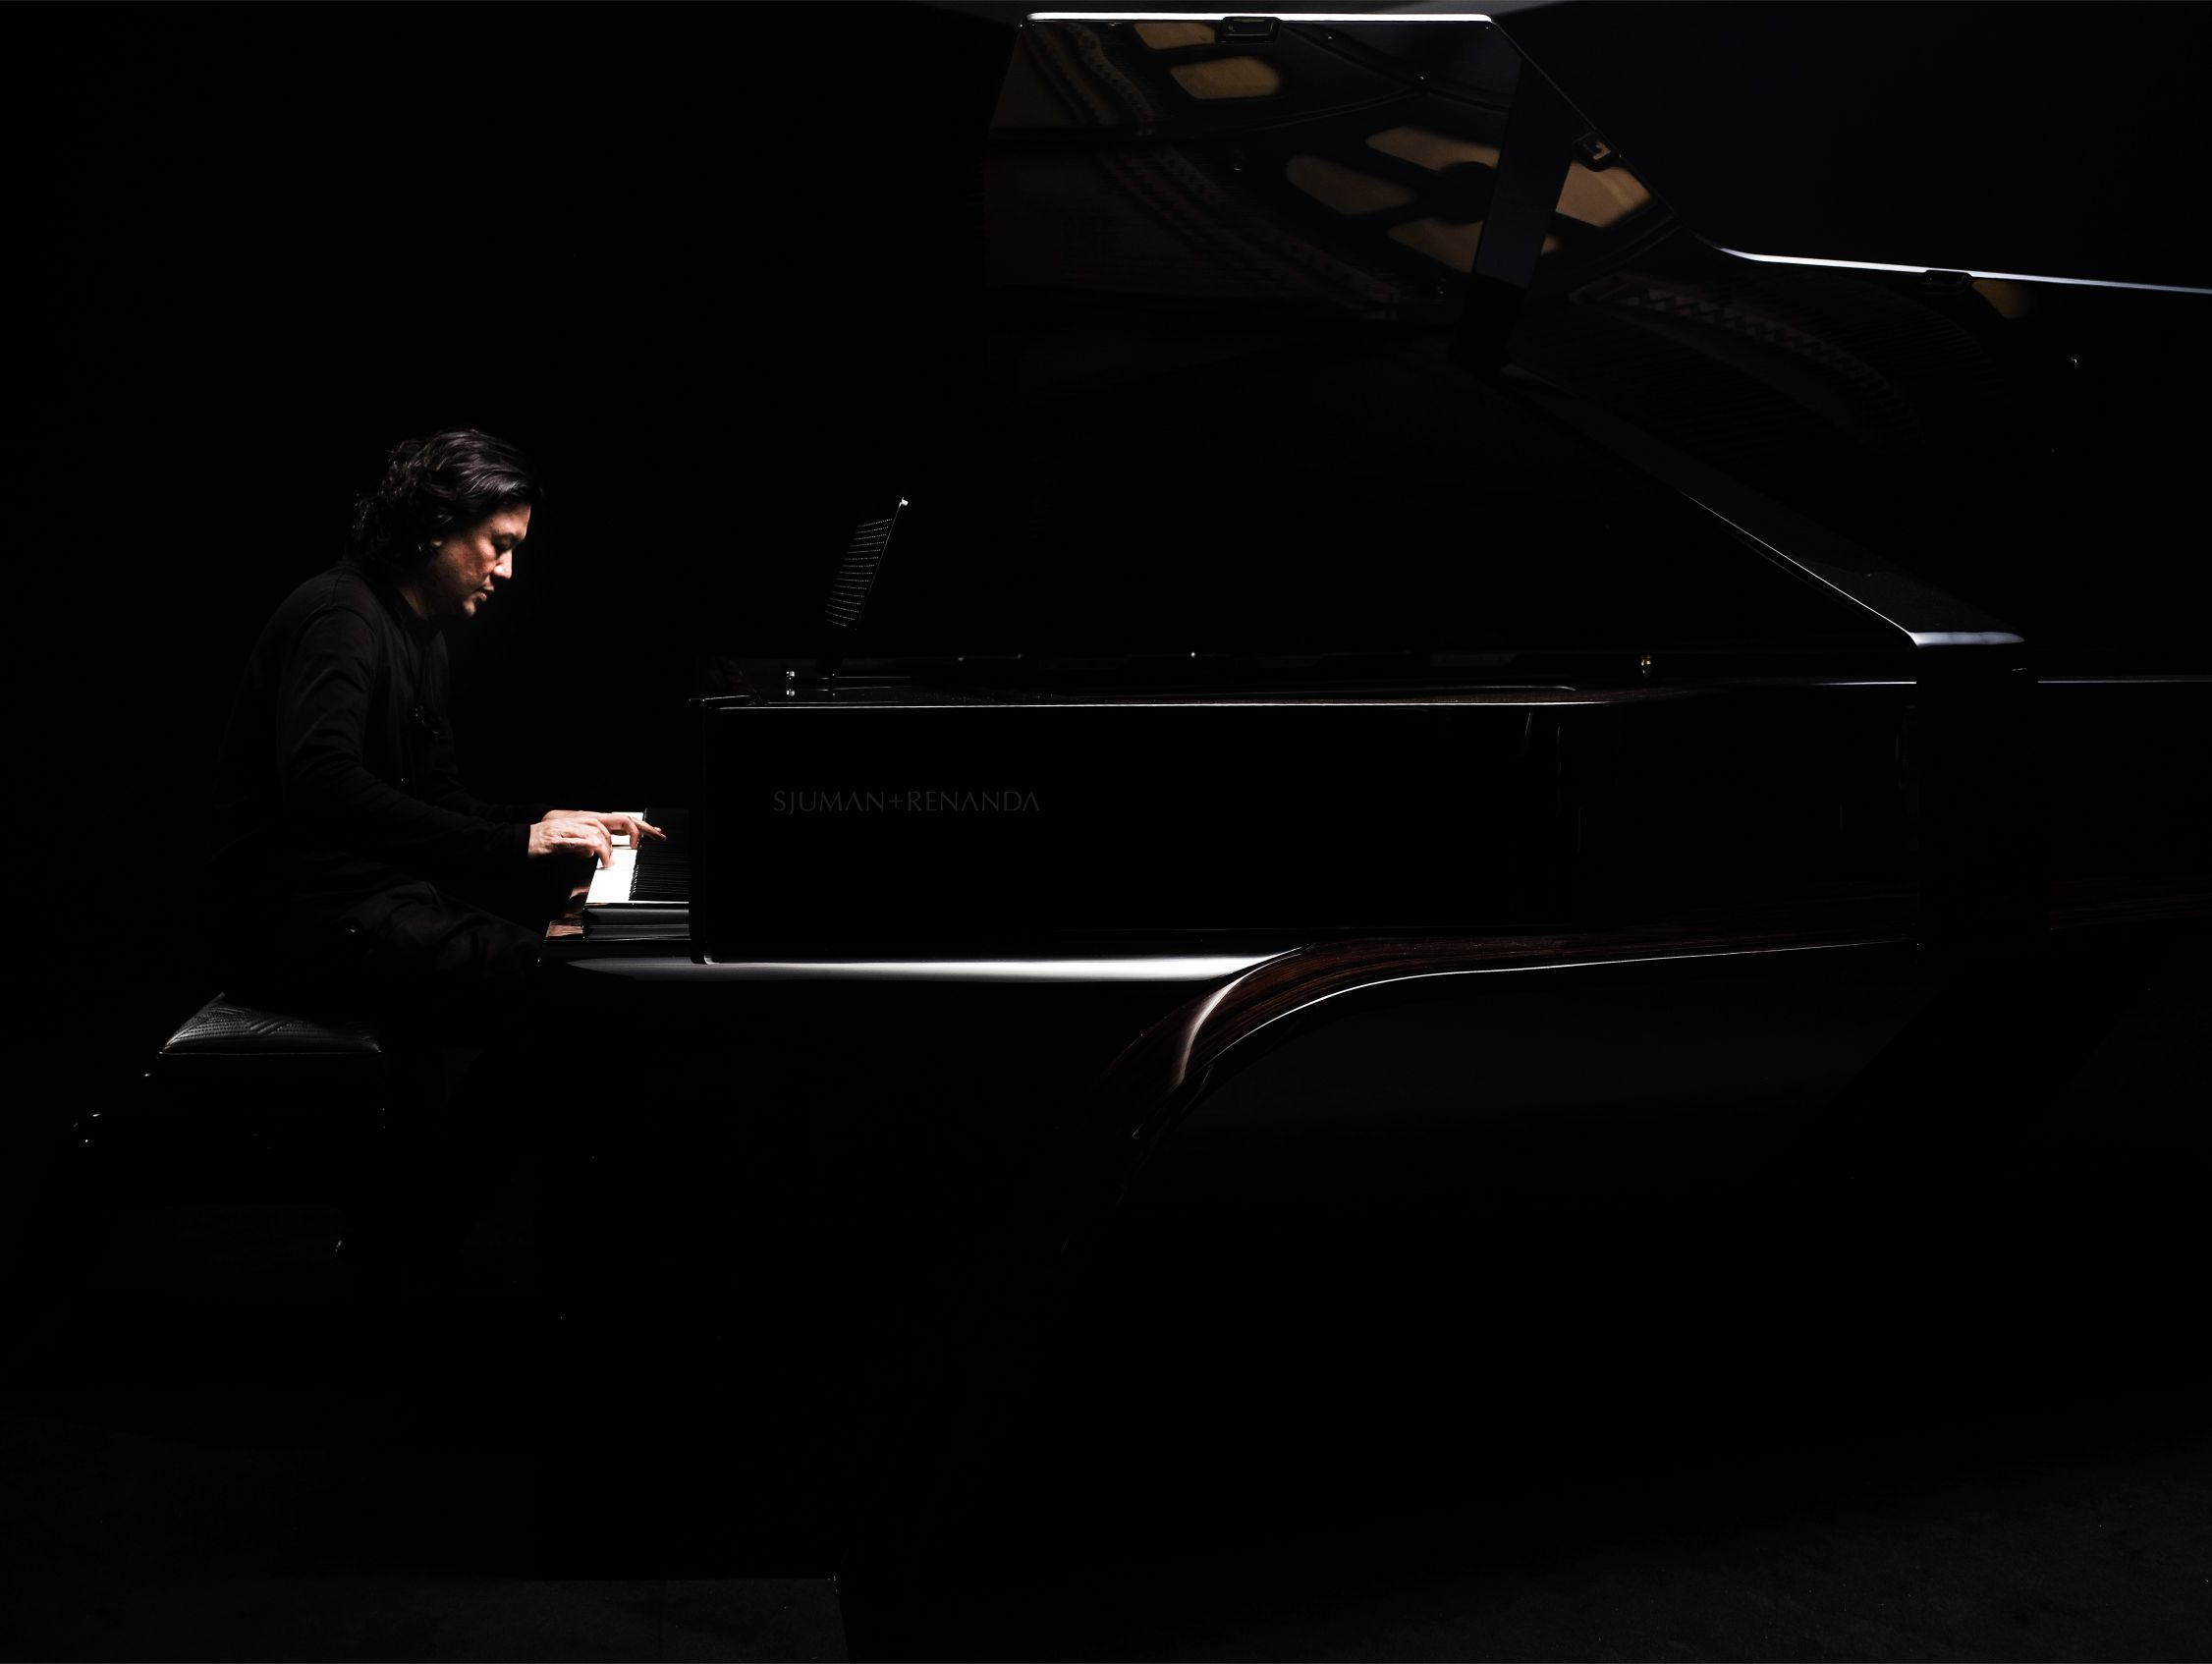 membanggakan! piano terbaik dunia buatan indonesia